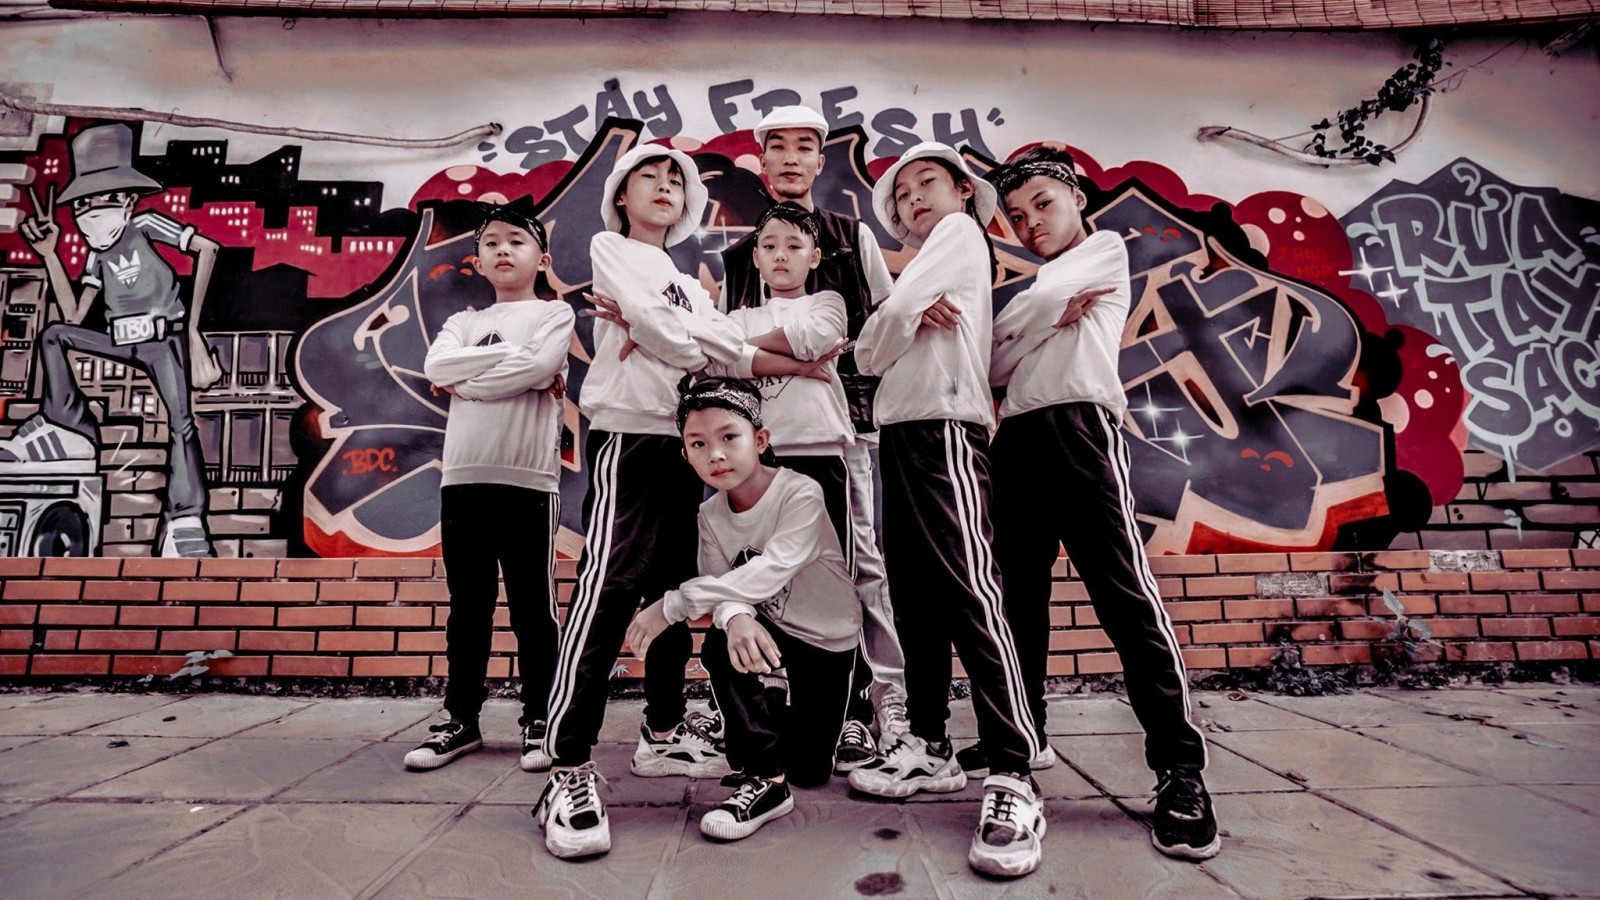 16h ngày 22/11 lần đầu tiên trên truyền thông: Call Out của BBoy/BGirl nhí Hà Nội "Toxic Crew vs New Style Kids"